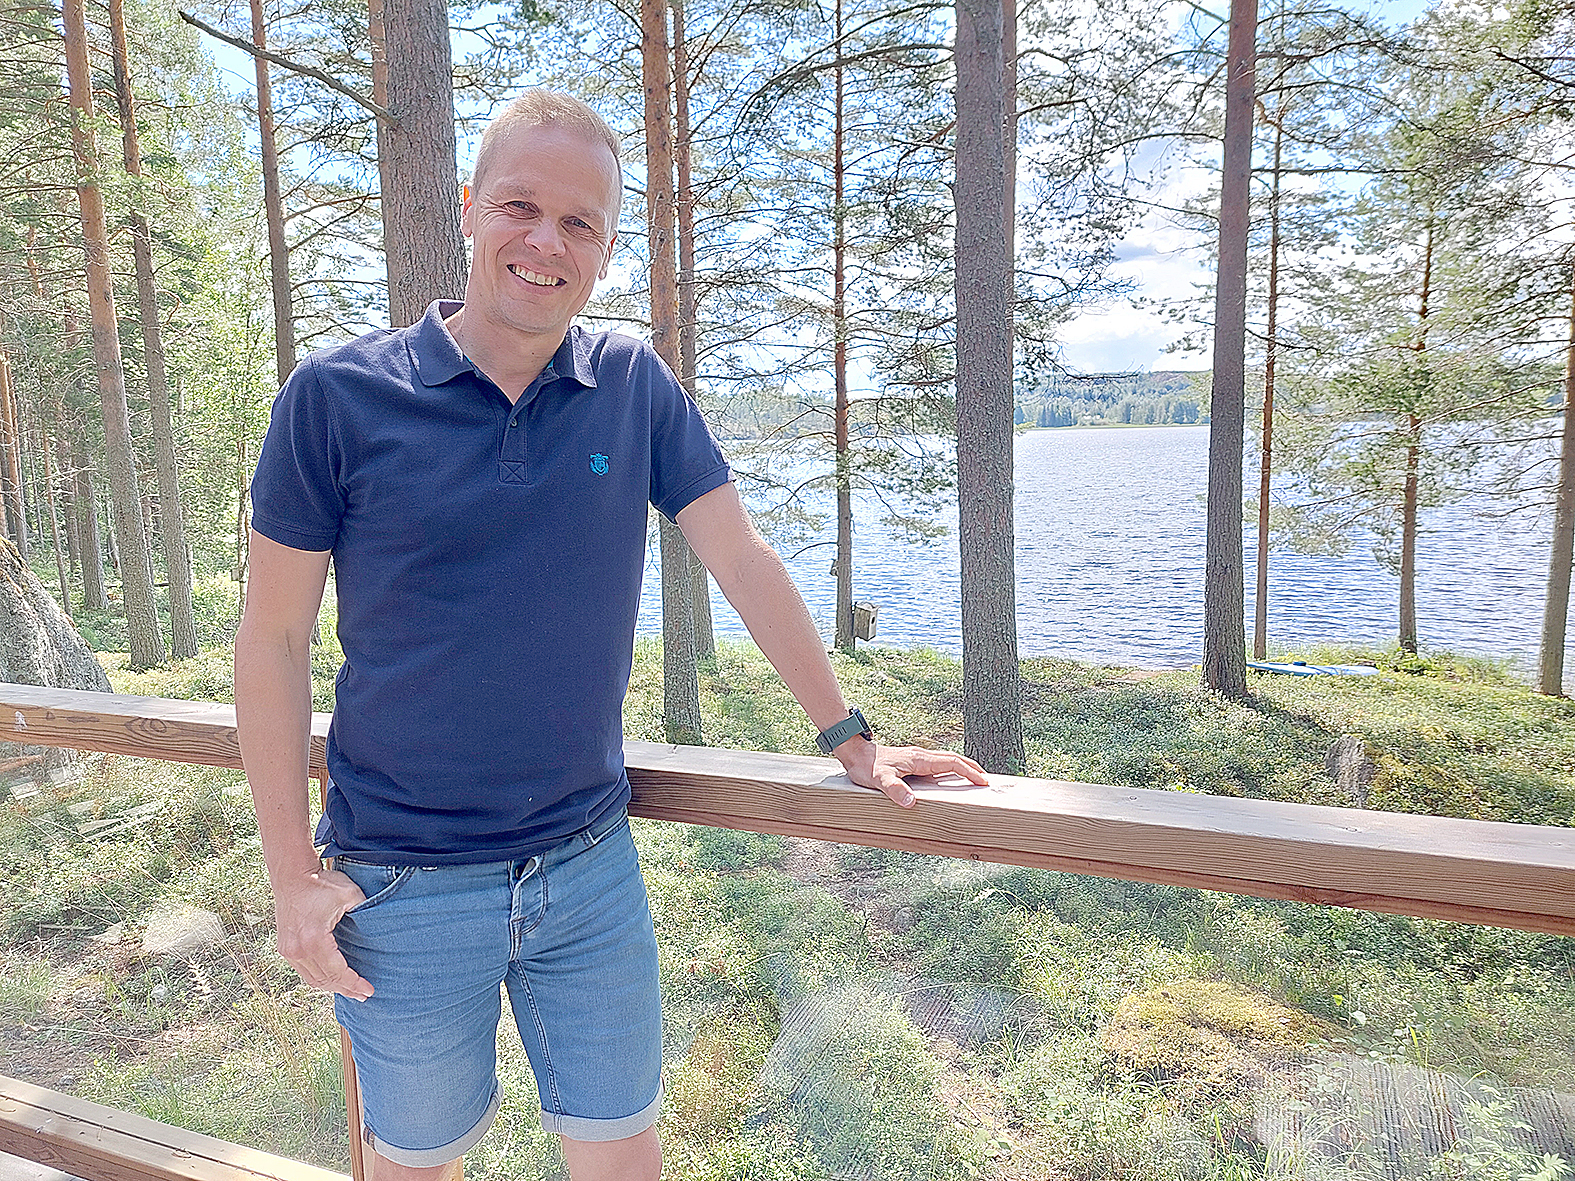 Liikuntaa harrastava kansanedustaja Markku Siponen haluaa tehdä työtä maaseudun elinvoimaisuuden hyväksi.